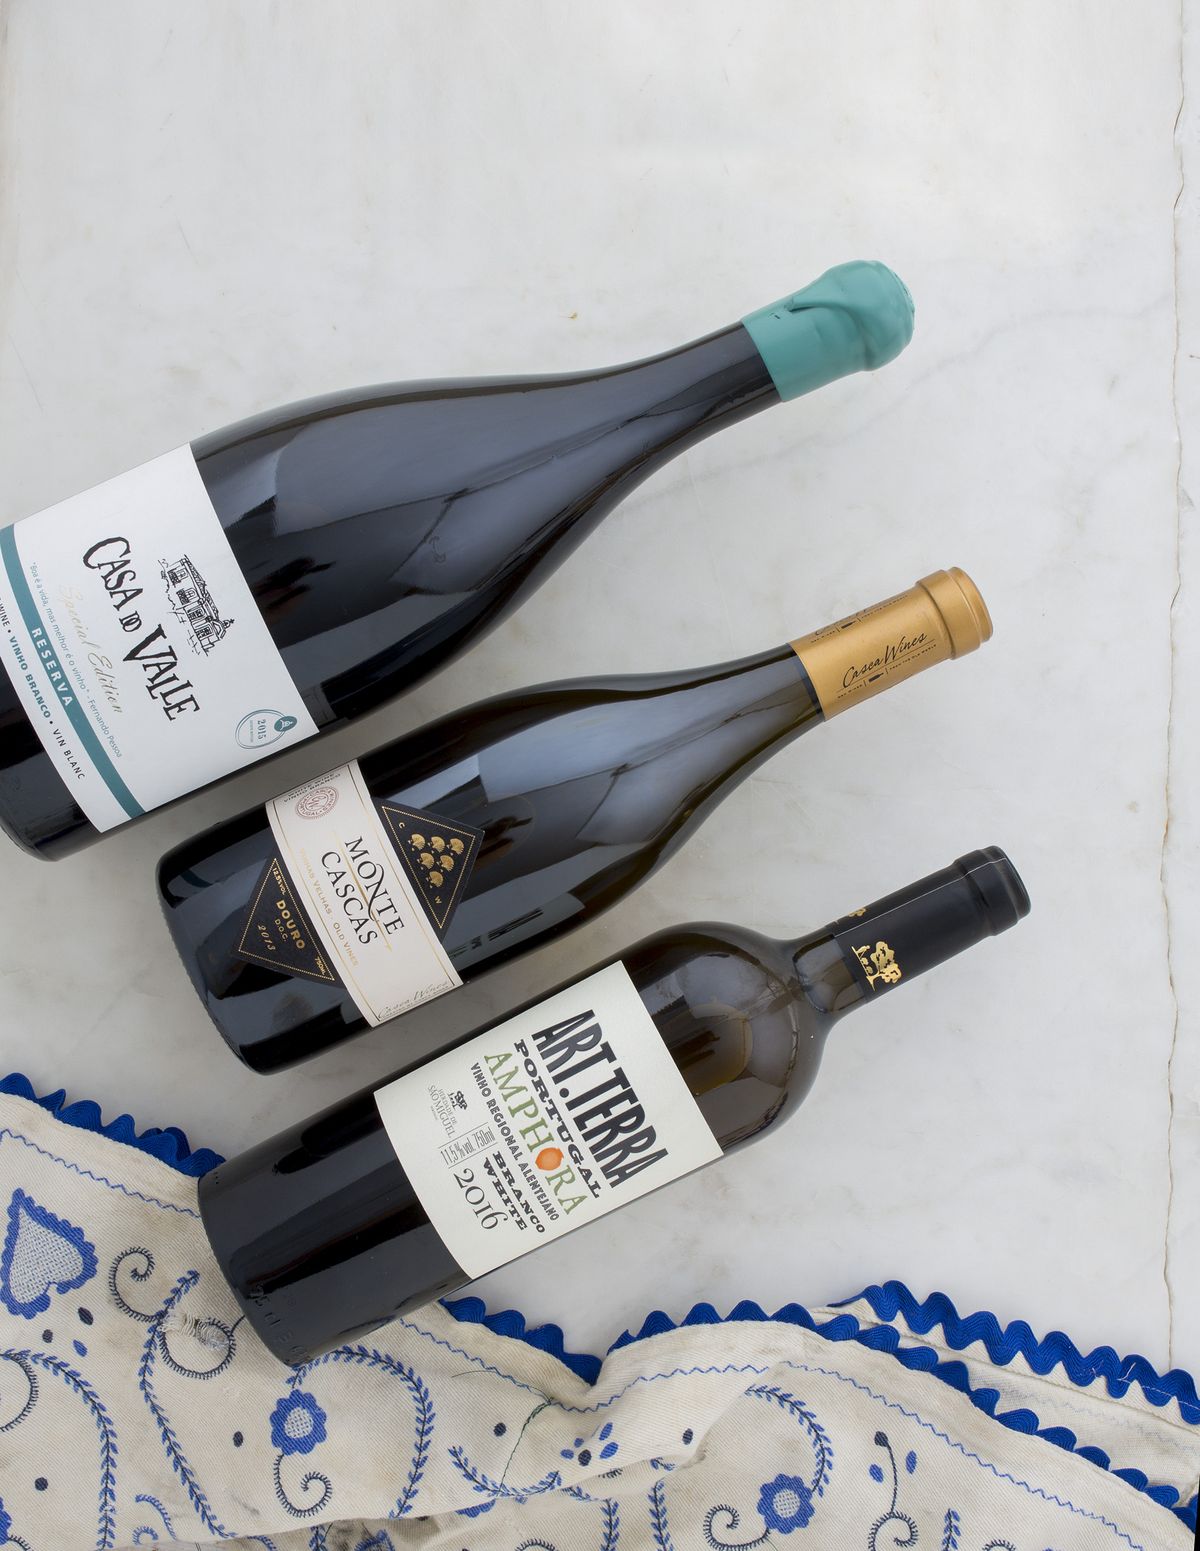 Lätta vita viner från Portugal.